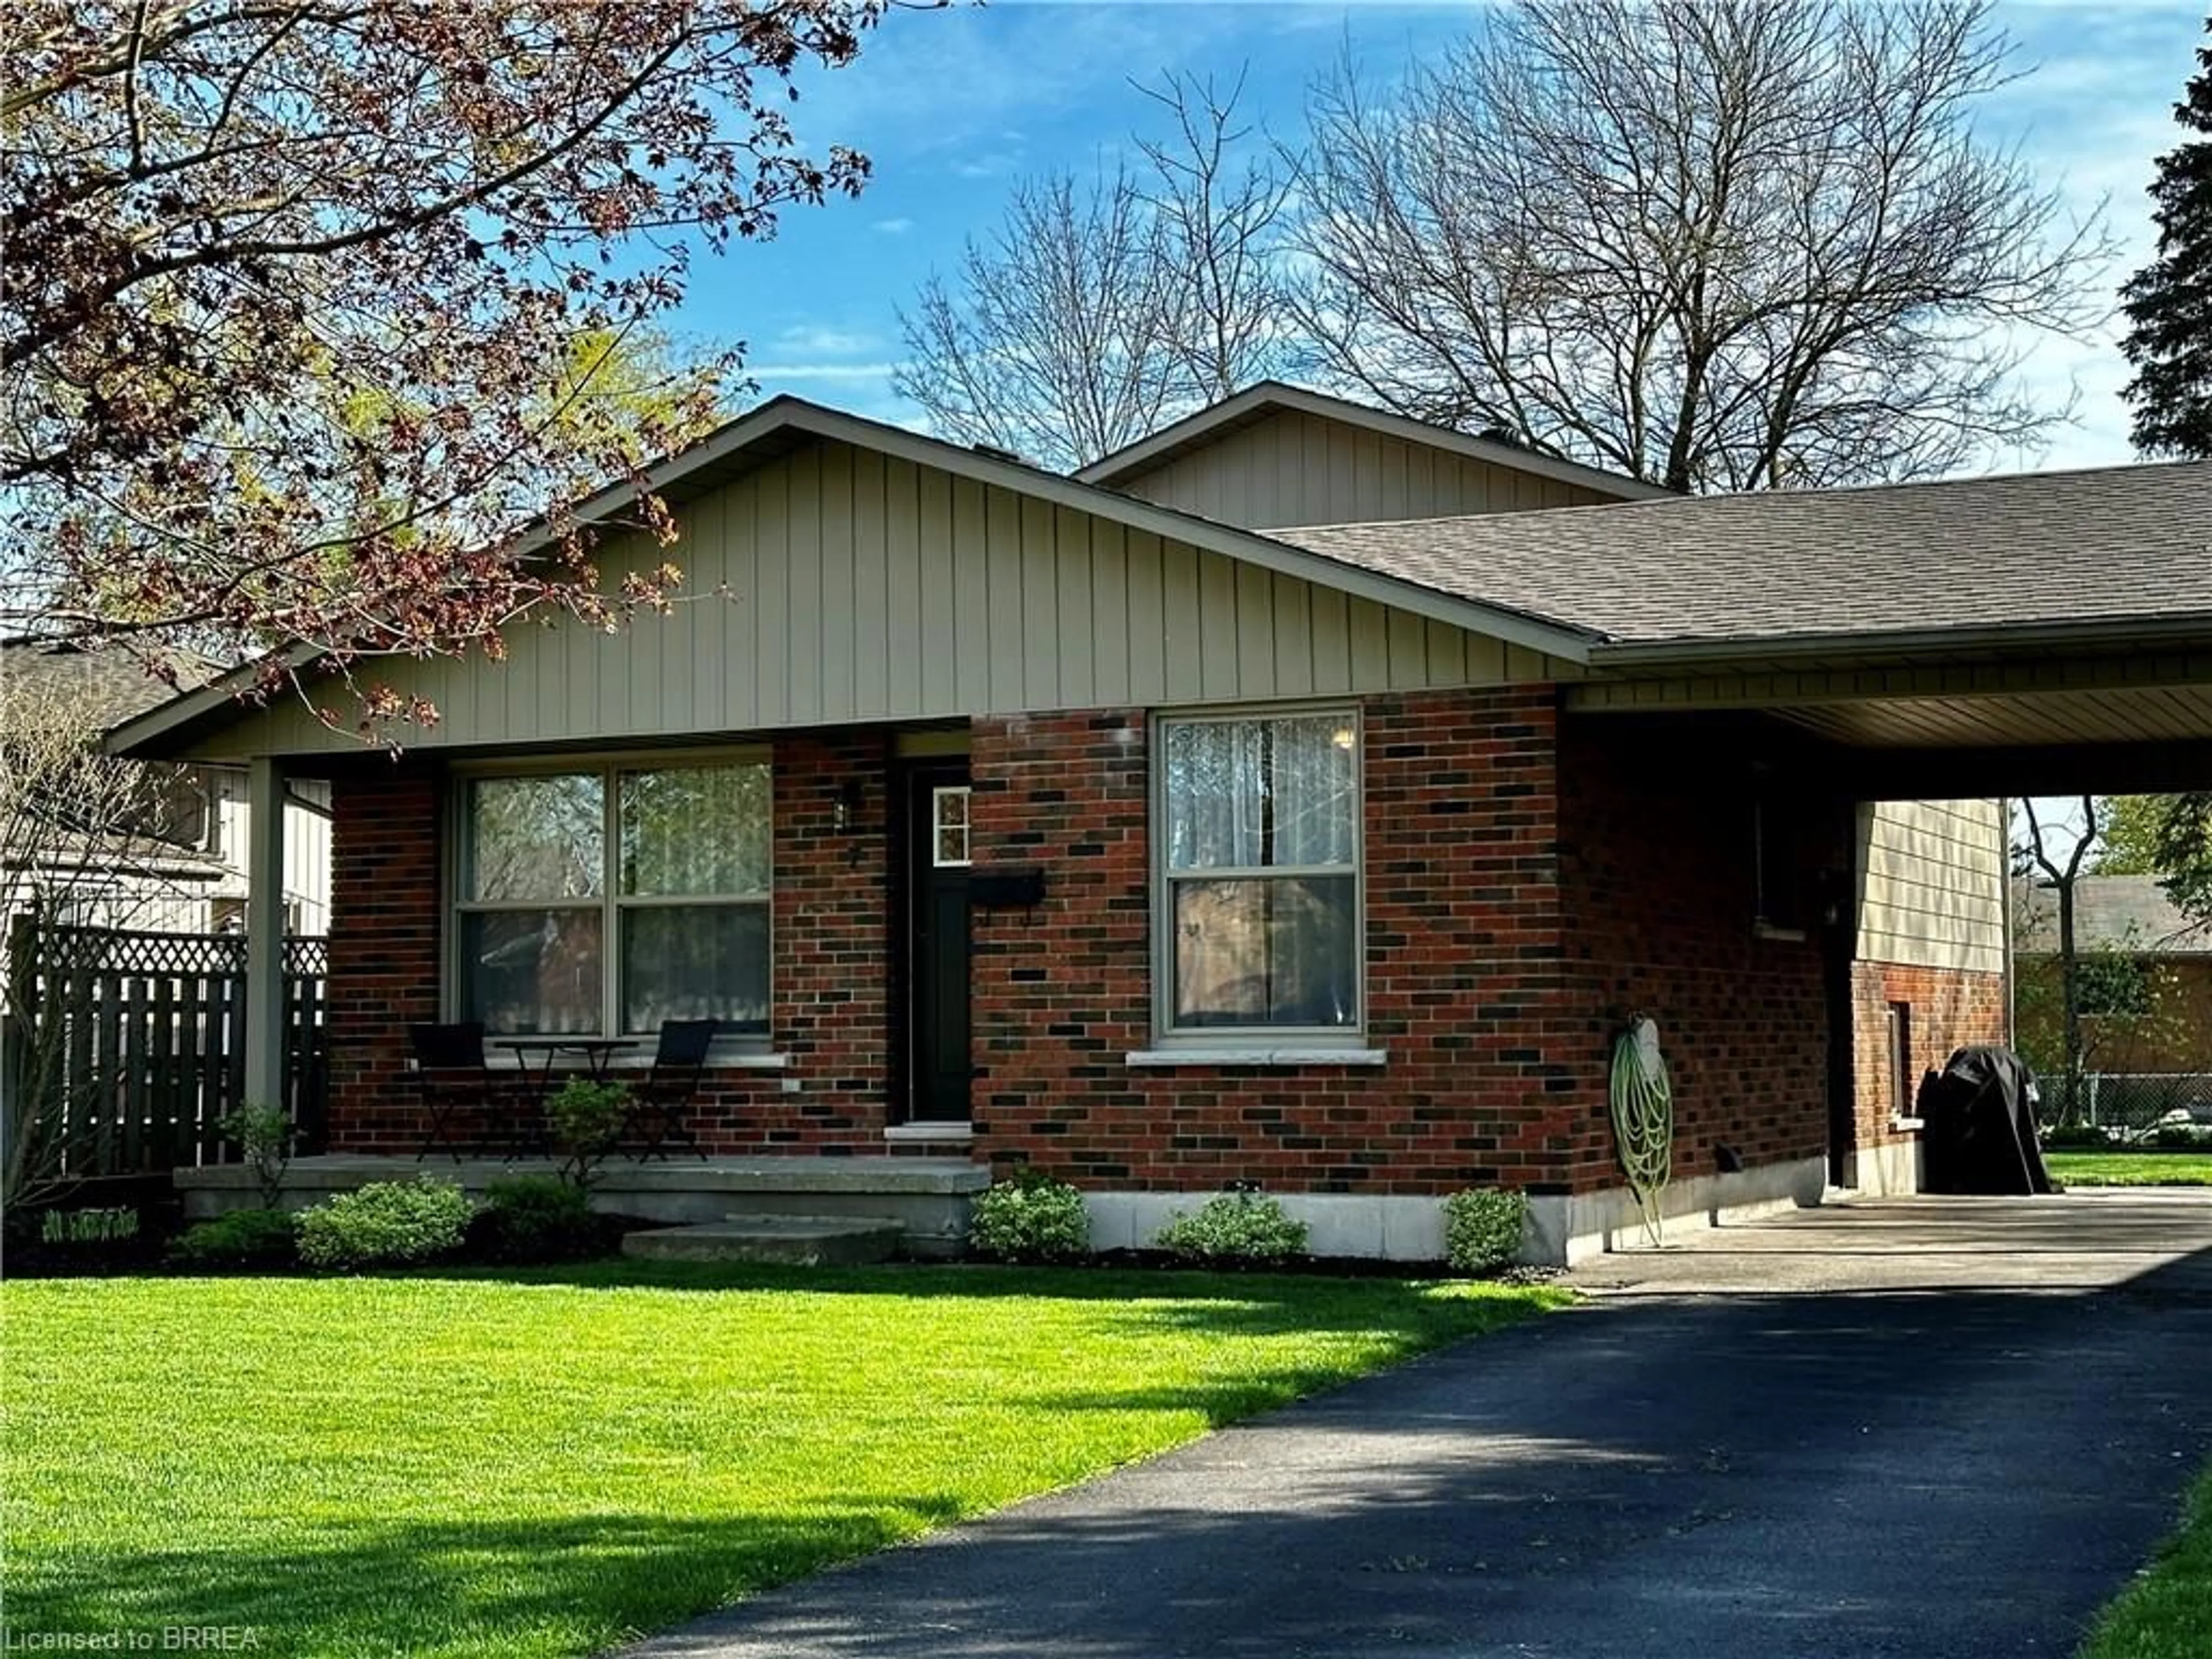 Home with brick exterior material for 7 Alba Ave, Tillsonburg Ontario N4G 4K2